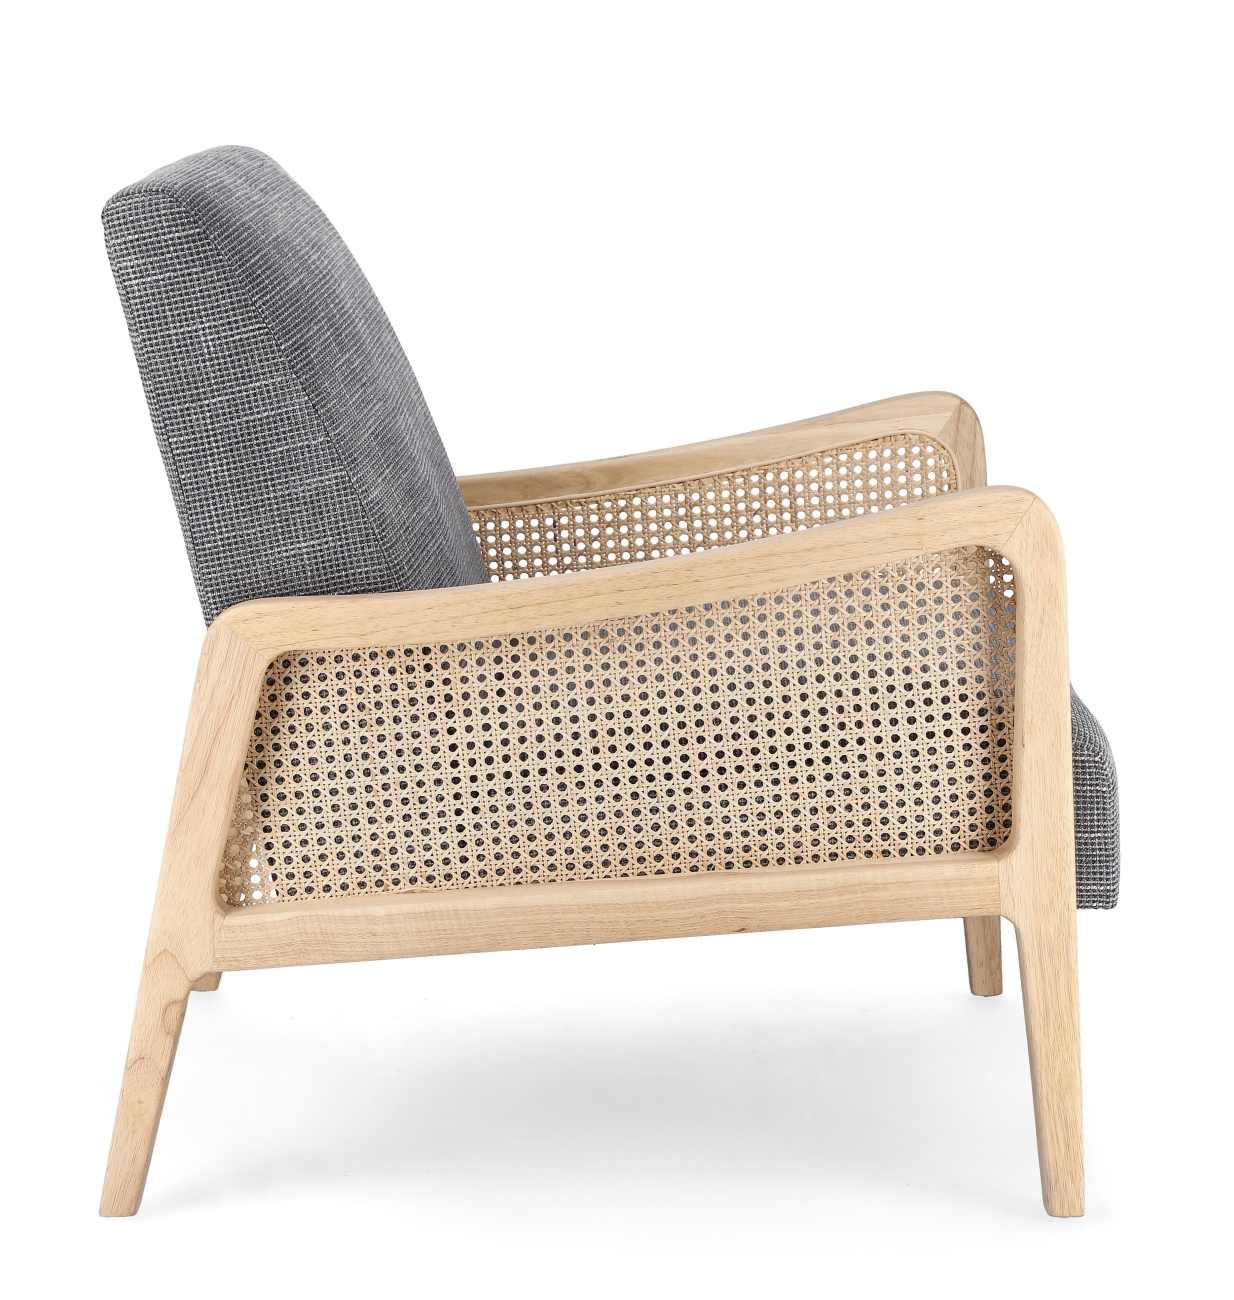 Der Sessel Deanna überzeugt mit seinem modernen Stil. Gefertigt wurde er aus einem Stoff-Bezug, welcher einen grauen Farbton besitzt. Das Gestell ist aus Kautschukholz und hat eine natürliche Farbe. Der Sessel verfügt über eine Armlehne.